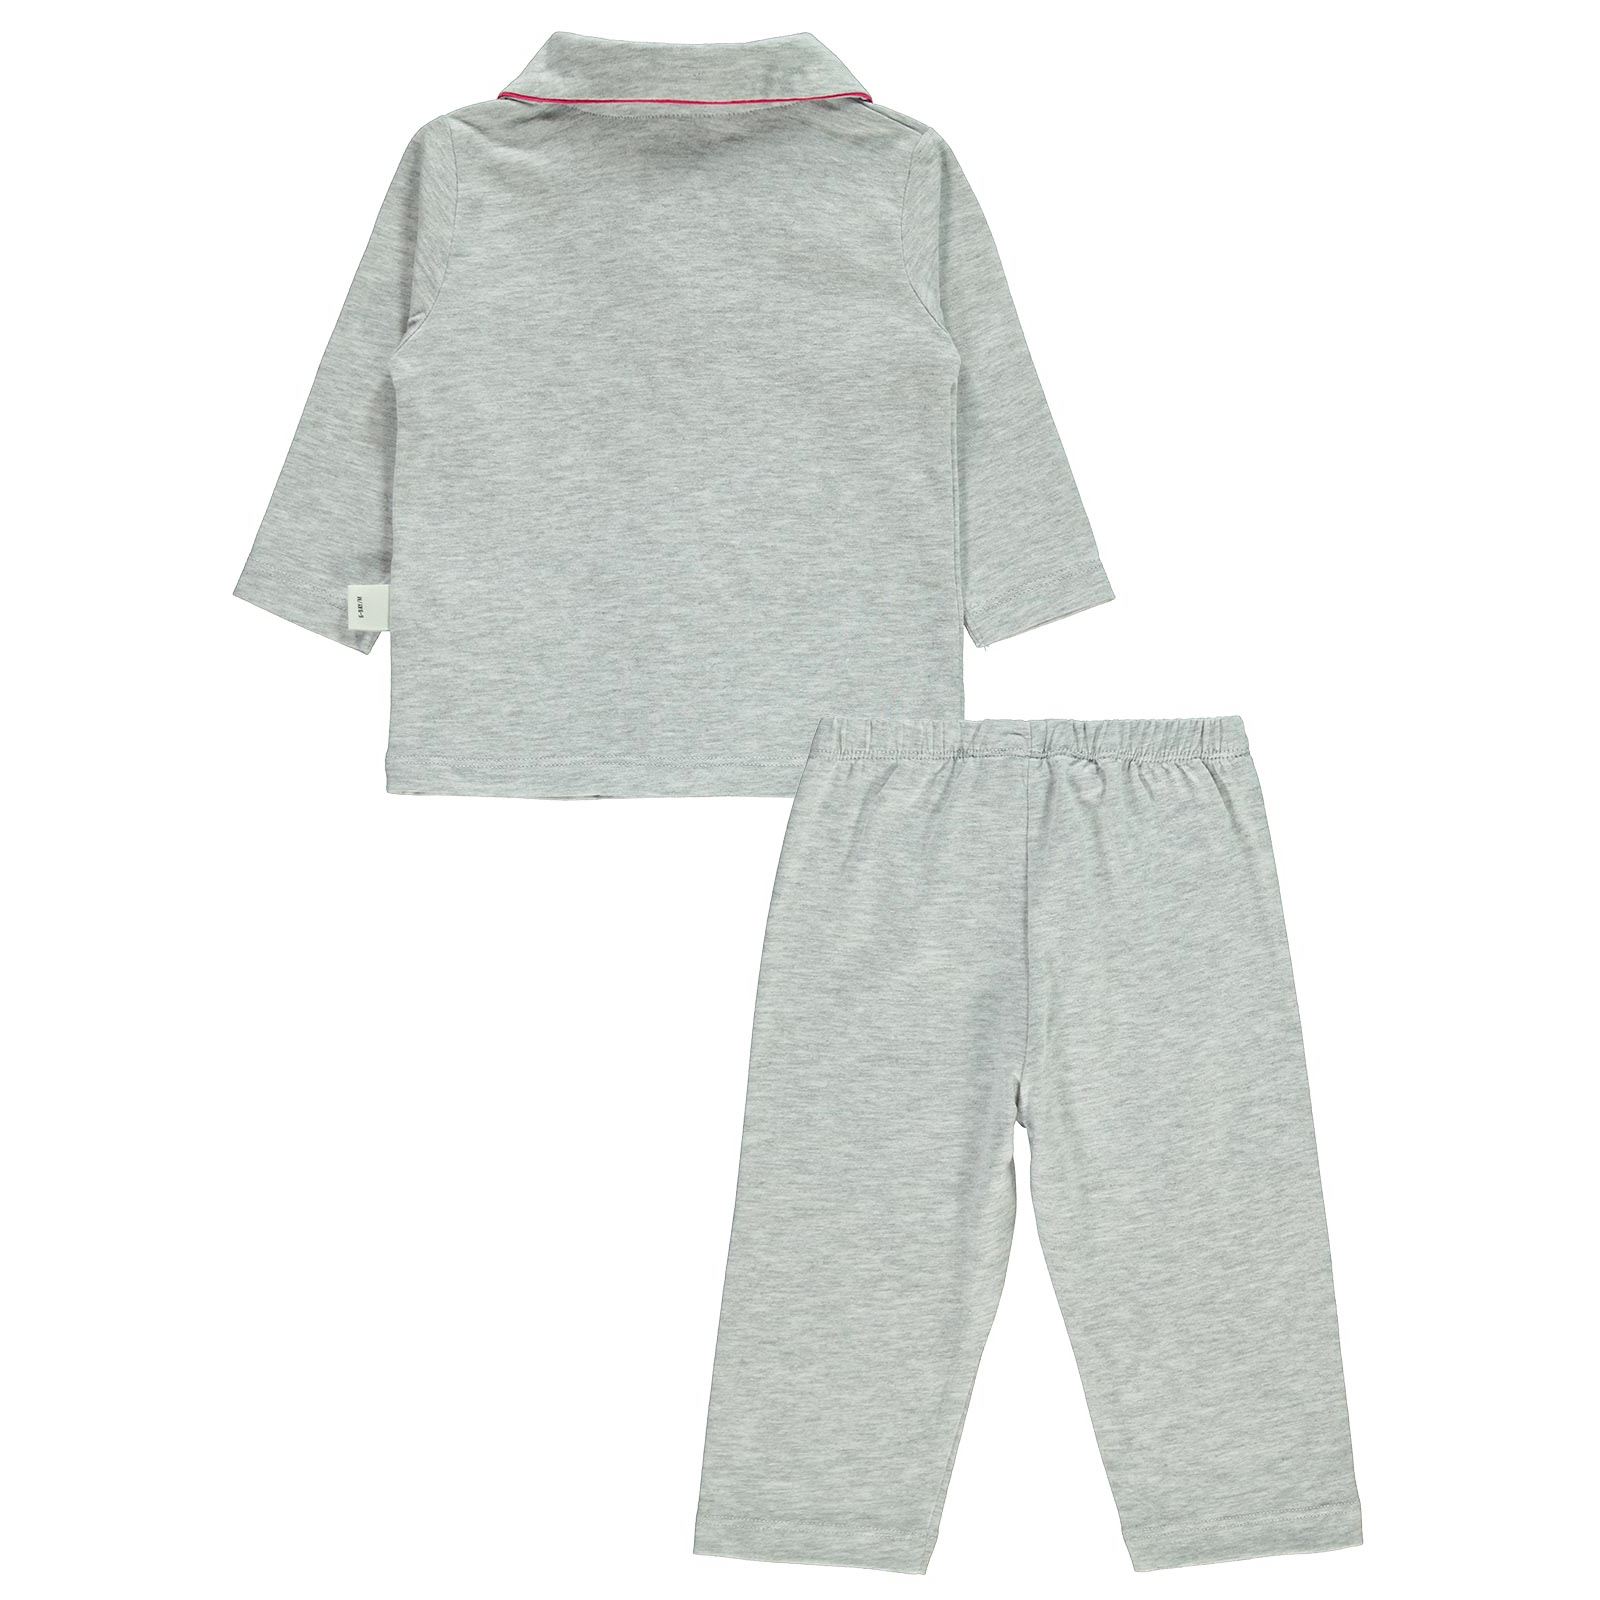 Civil Baby Kız Bebek Pijama Takımı 6-18 Ay Karmelanj